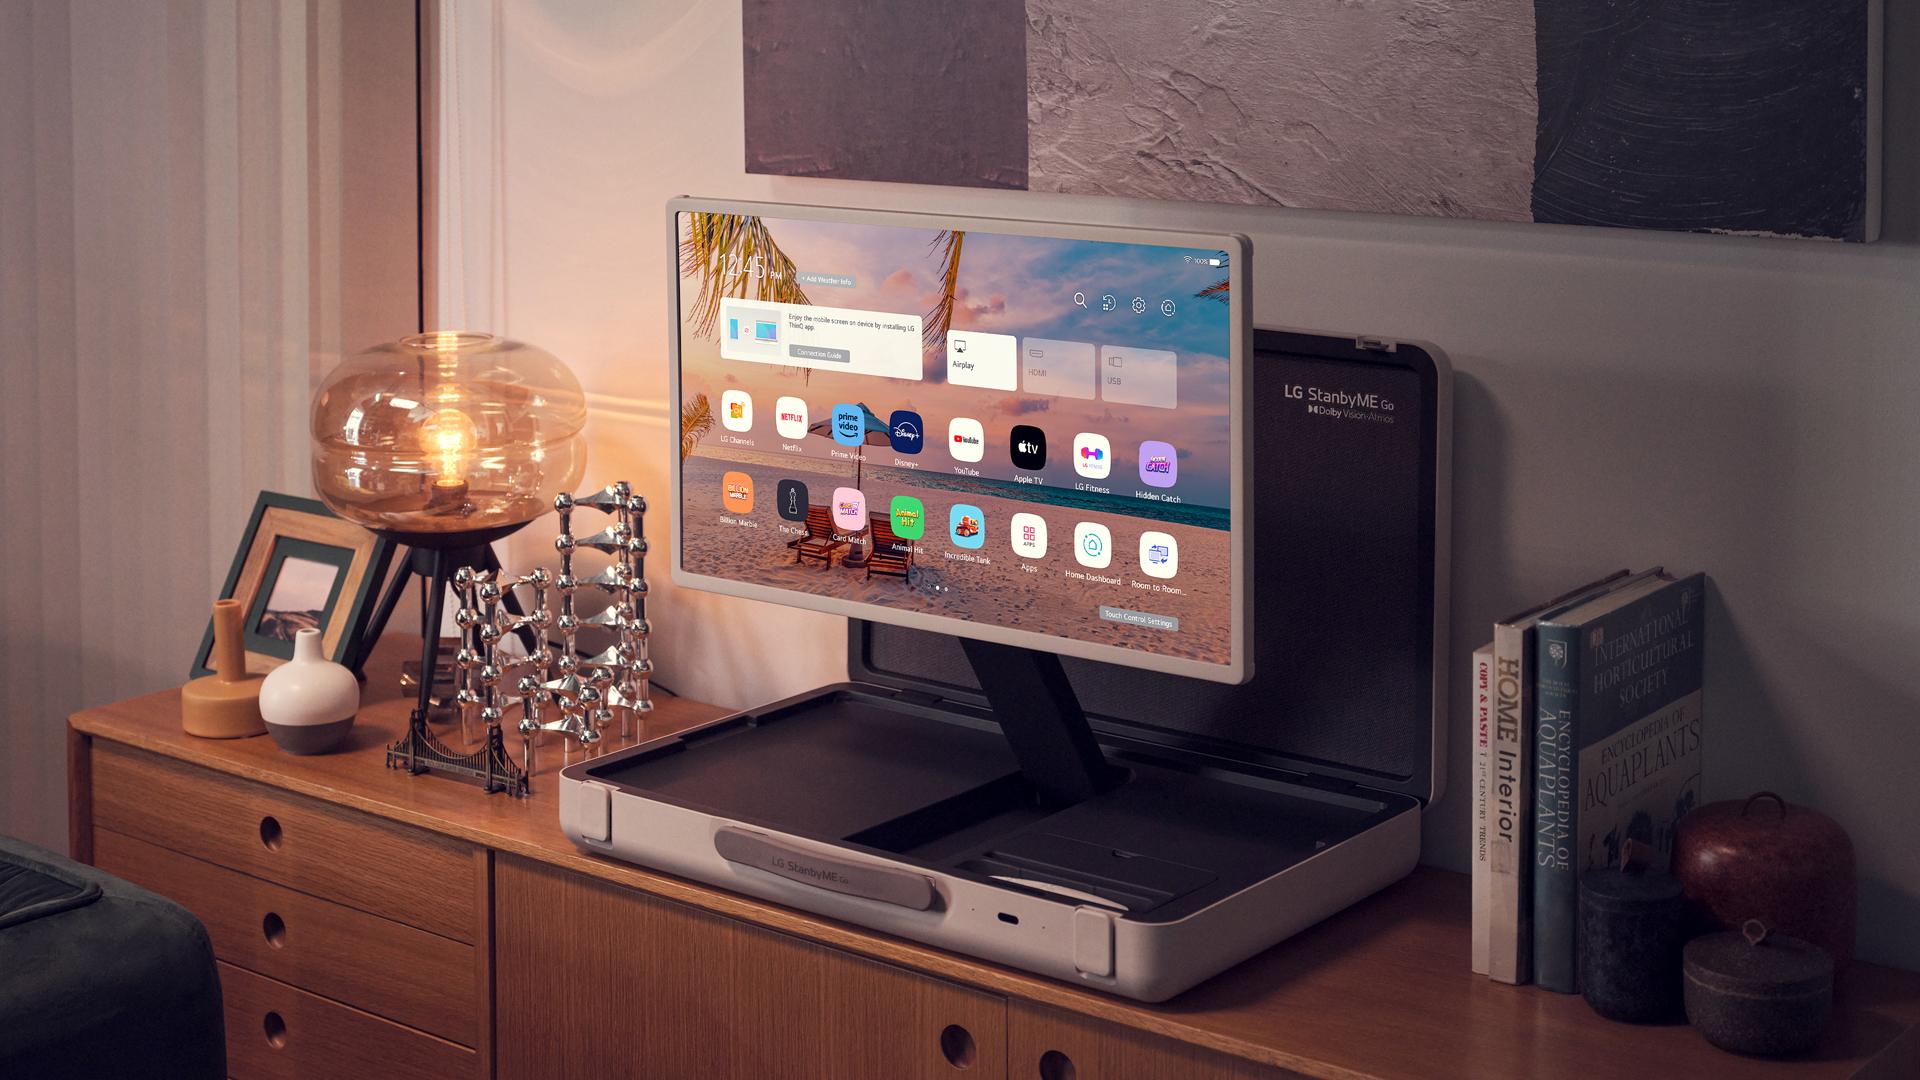 LG ra mắt thiết bị giải trí di động StanbyME Go với hình dáng như chiếc vali - Ảnh 5.